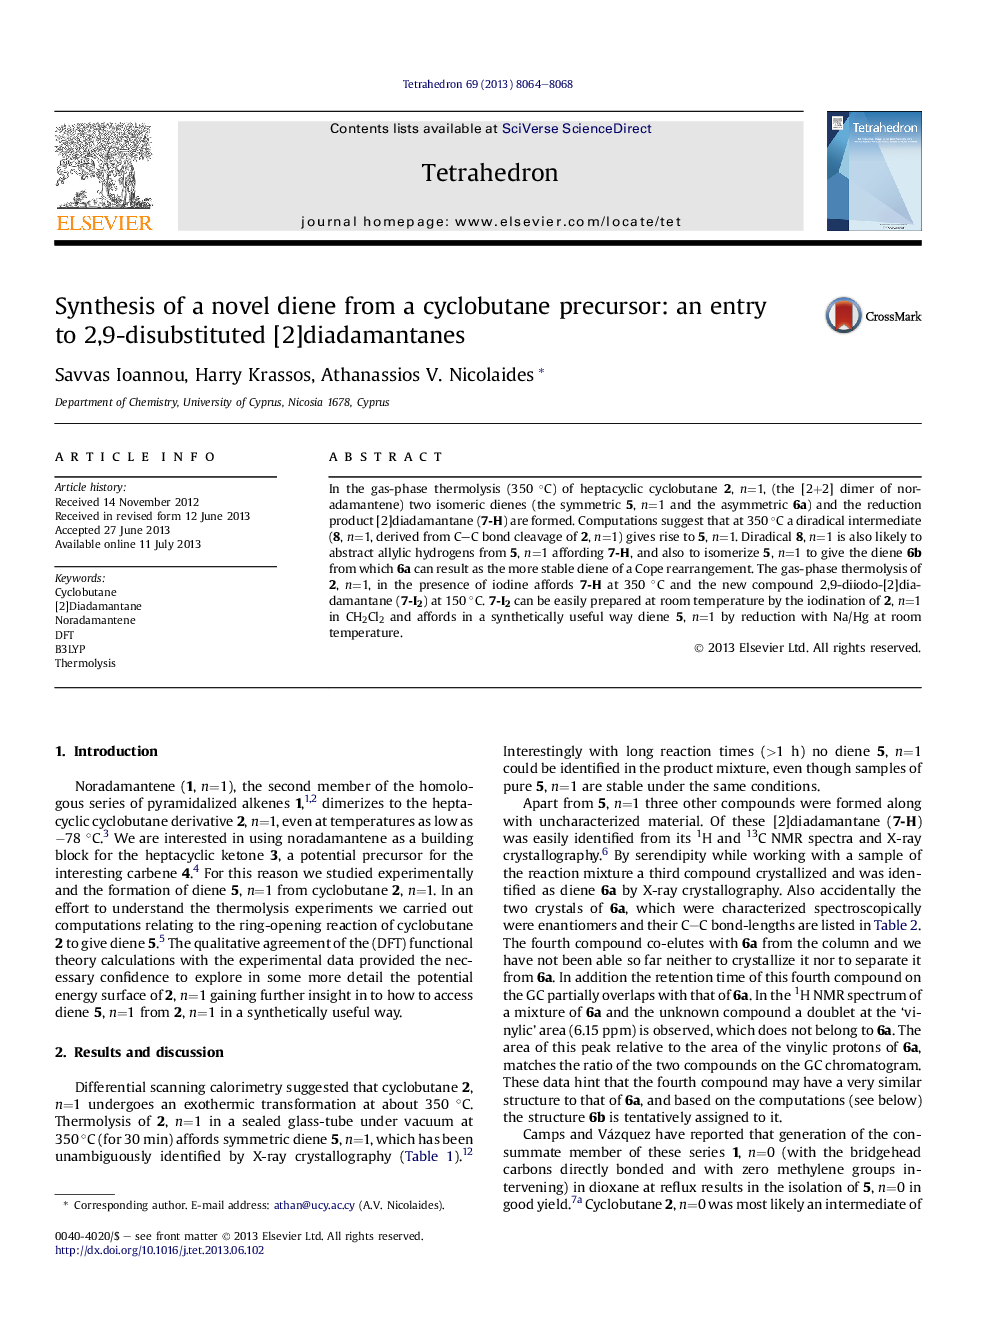 Synthesis of a novel diene from a cyclobutane precursor: an entry toÂ 2,9-disubstituted [2]diadamantanes